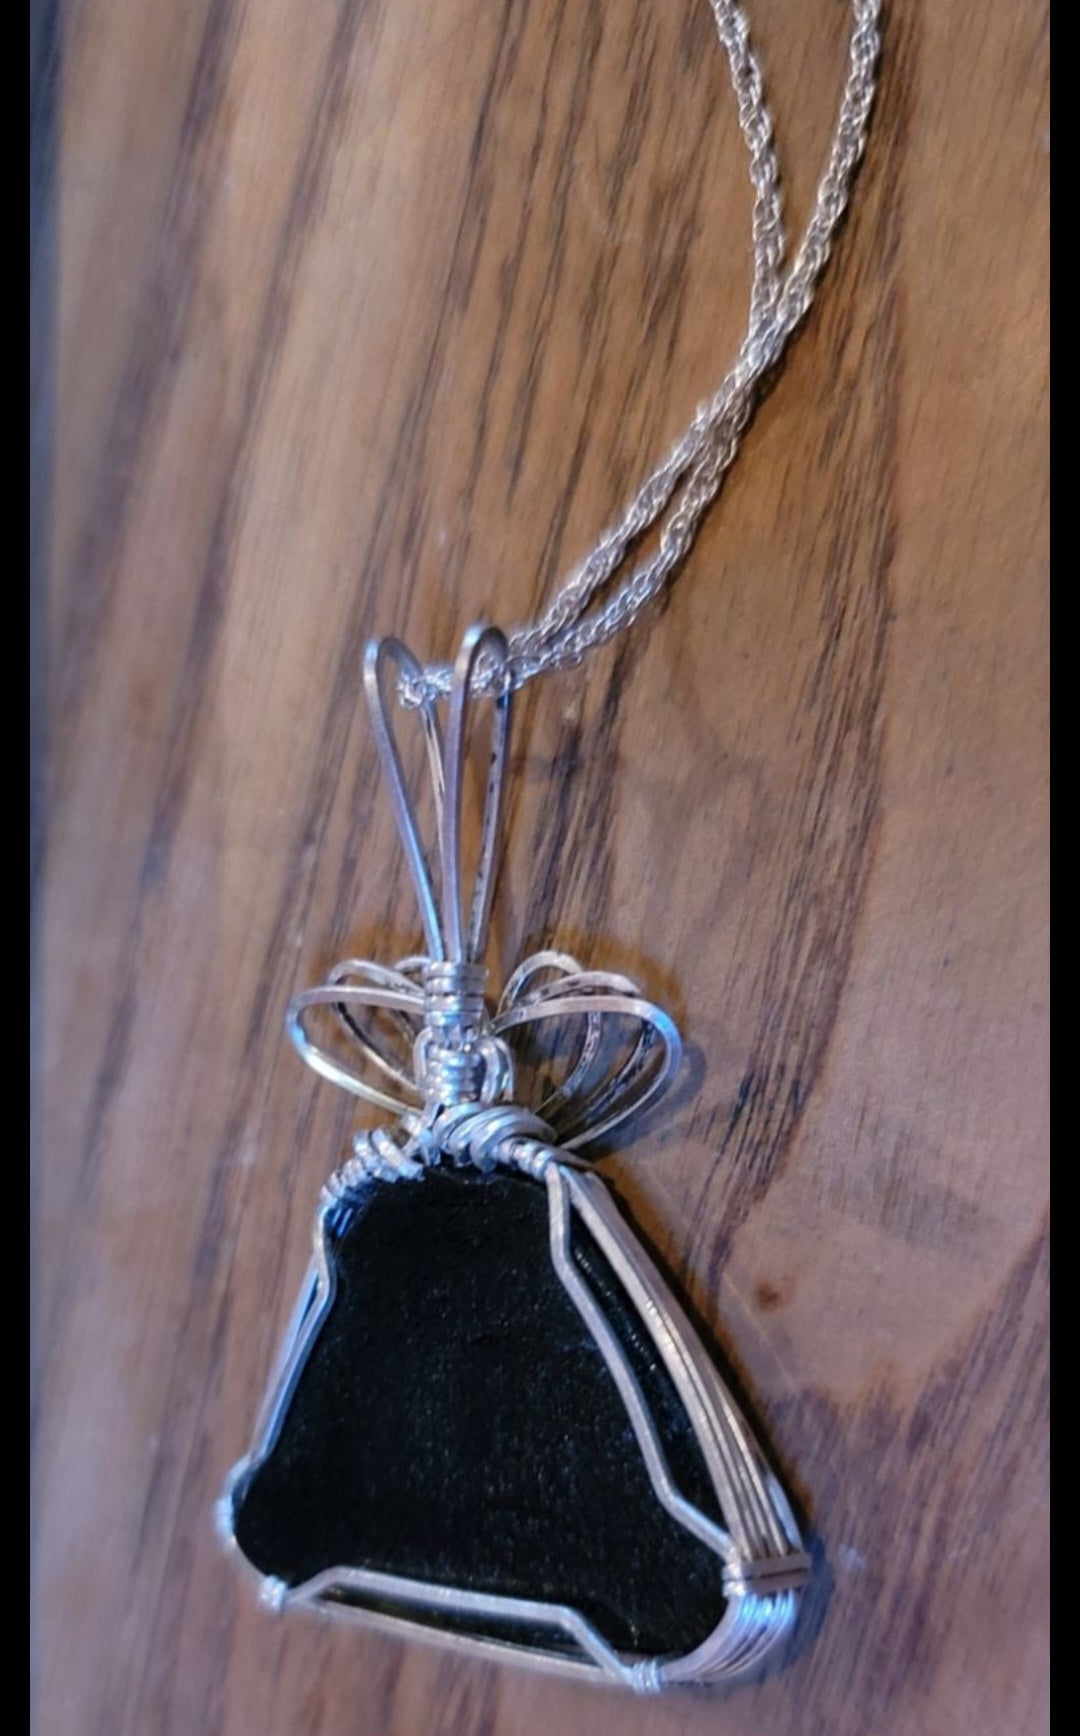 Unique resin pendant in silver setting